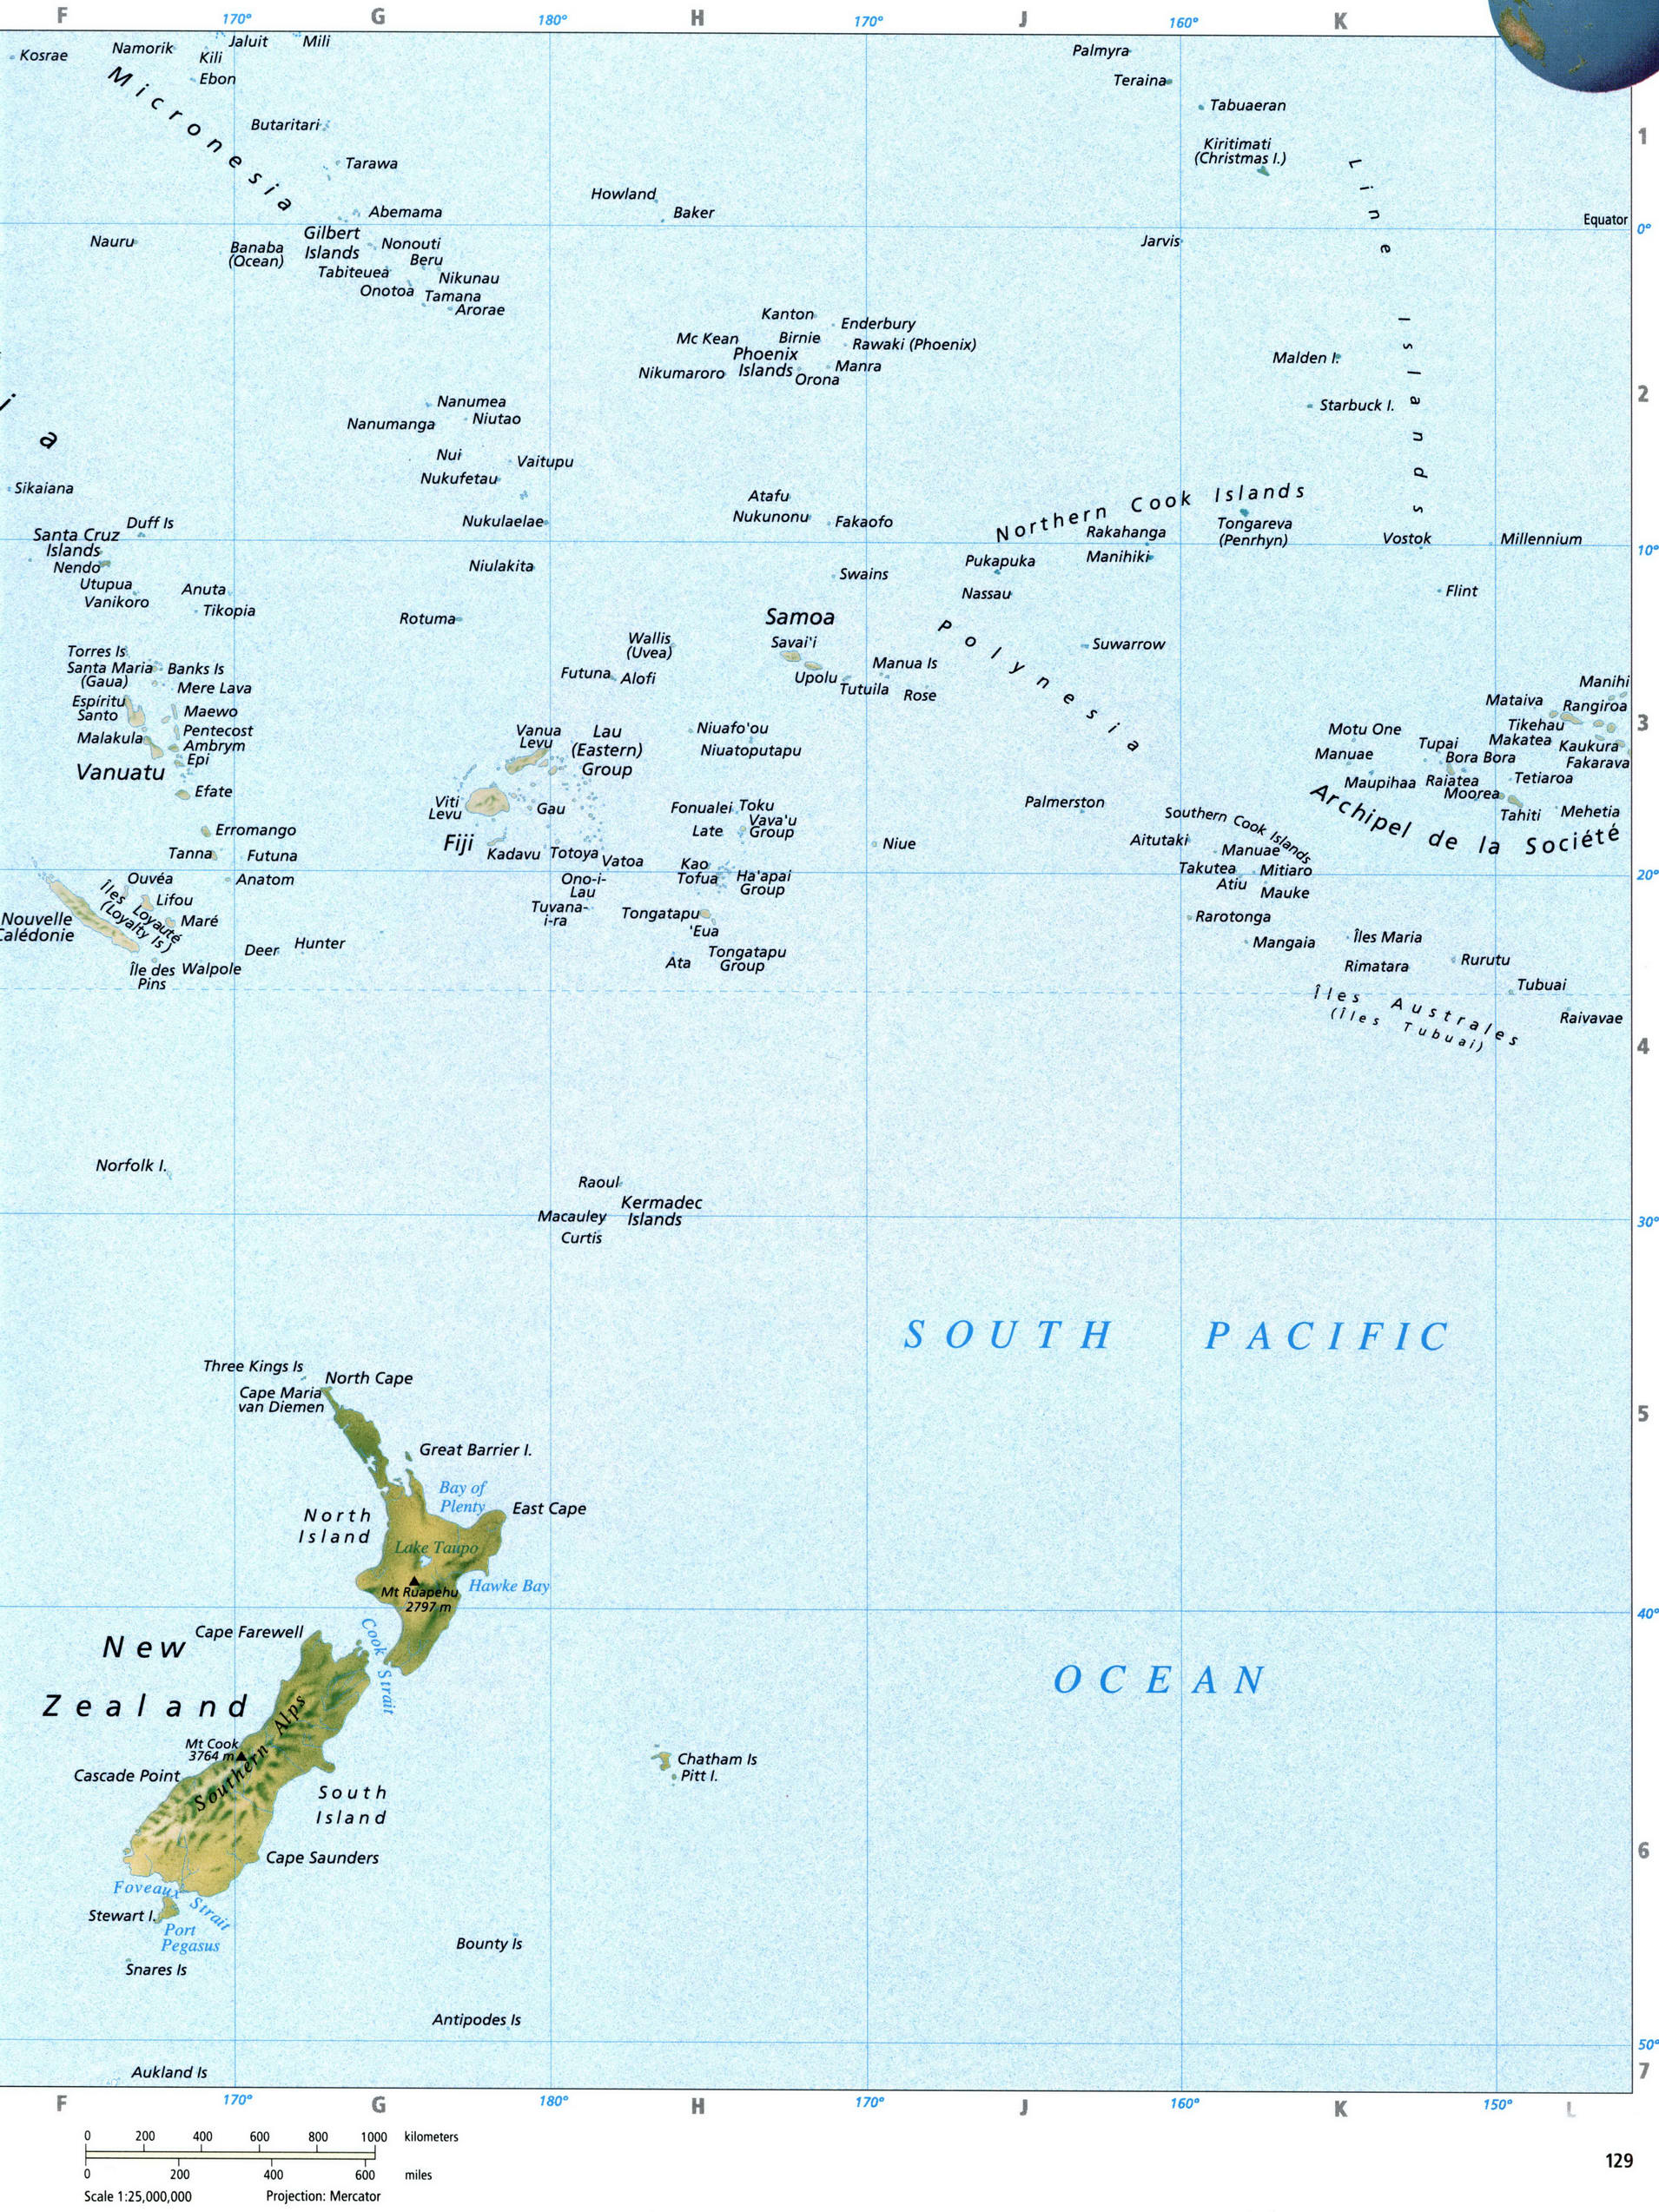 Подробная карта Океании